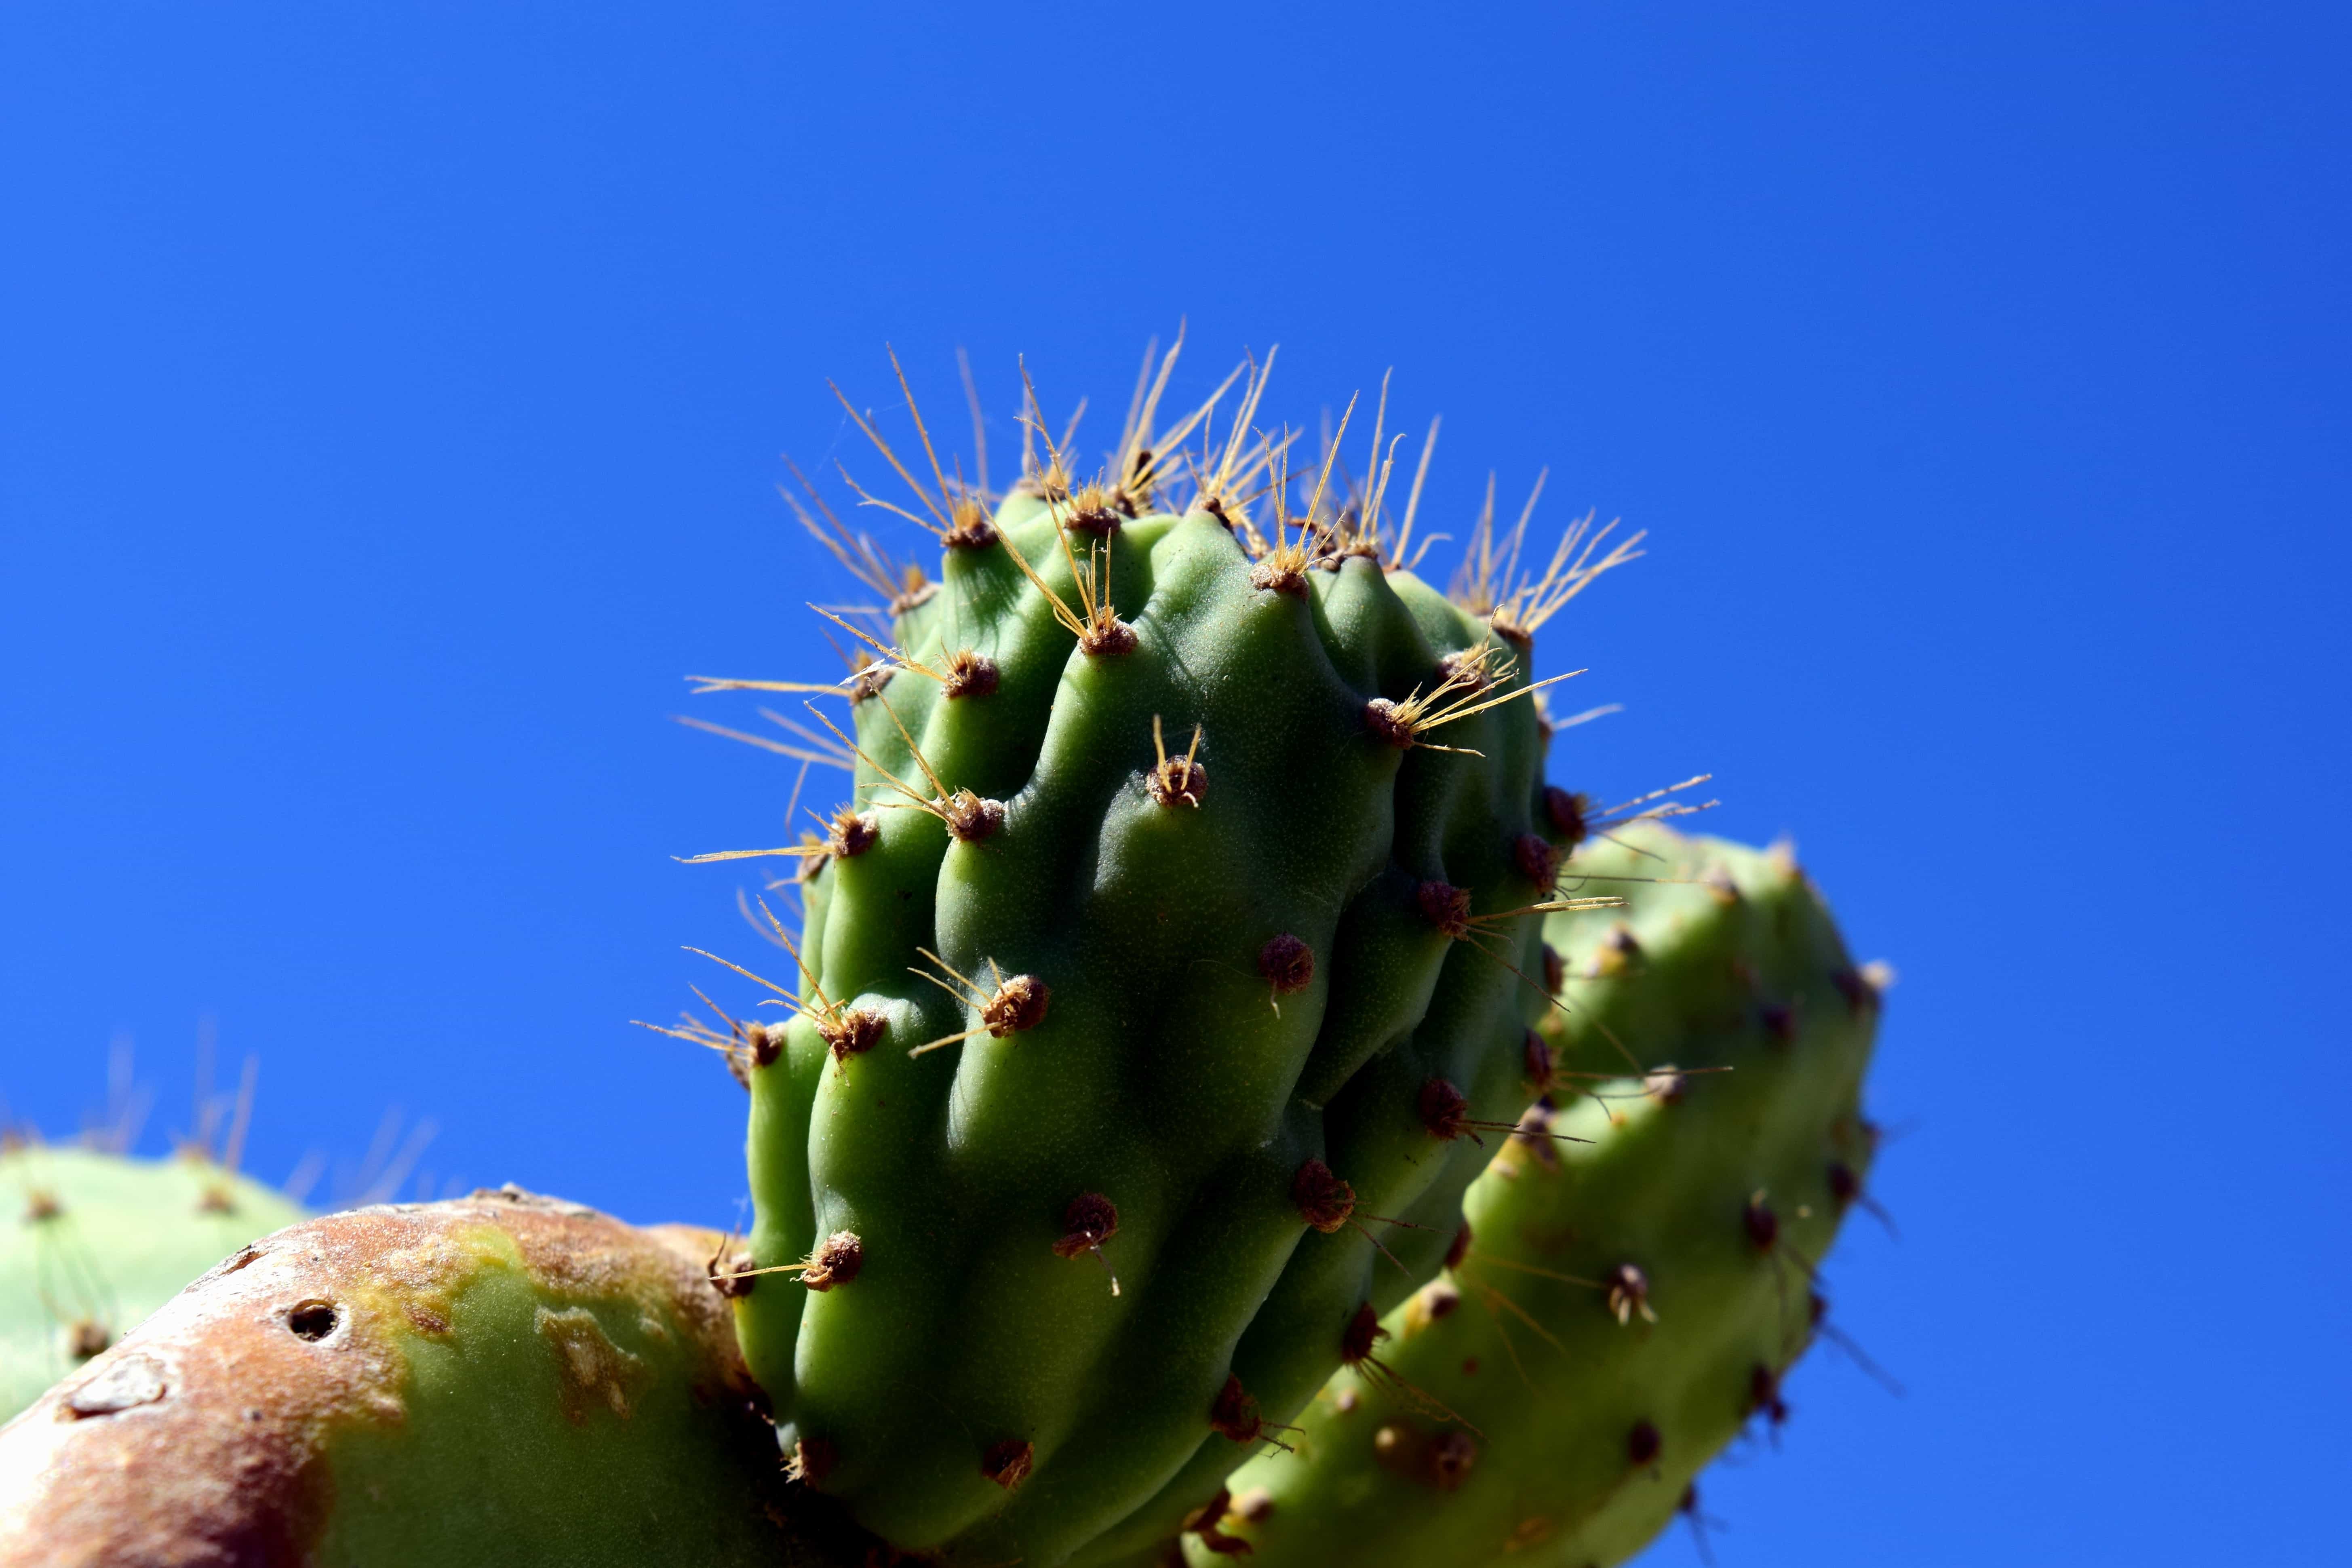 西北沙漠常见植物图片